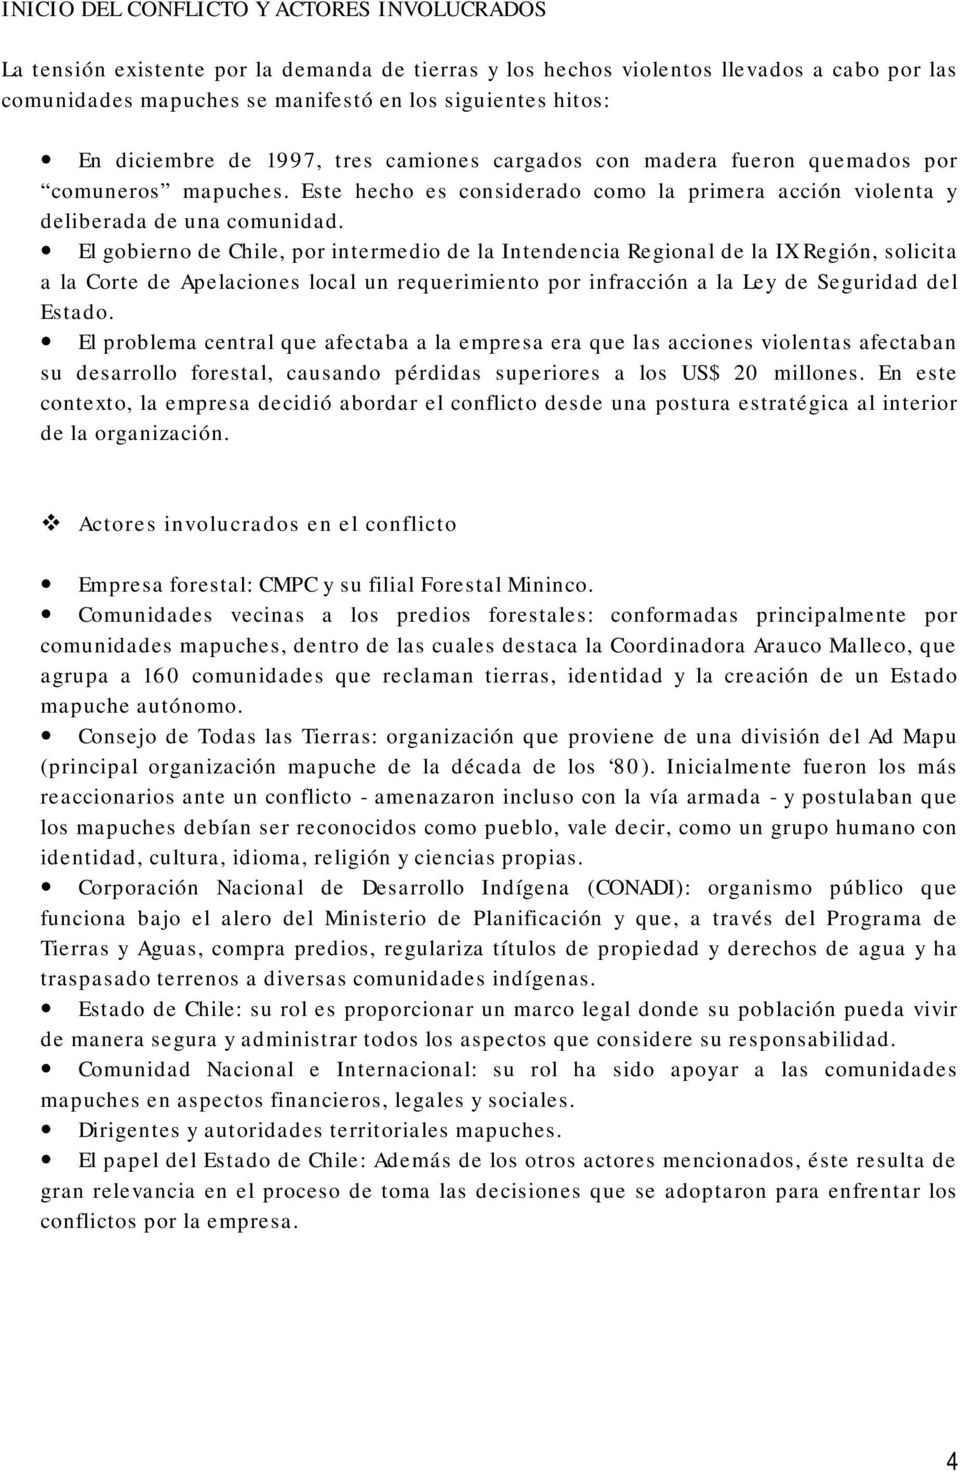 El gobierno de Chile, por intermedio de la Intendencia Regional de la IX Región, solicita a la Corte de Apelaciones local un requerimiento por infracción a la Ley de Seguridad del Estado.